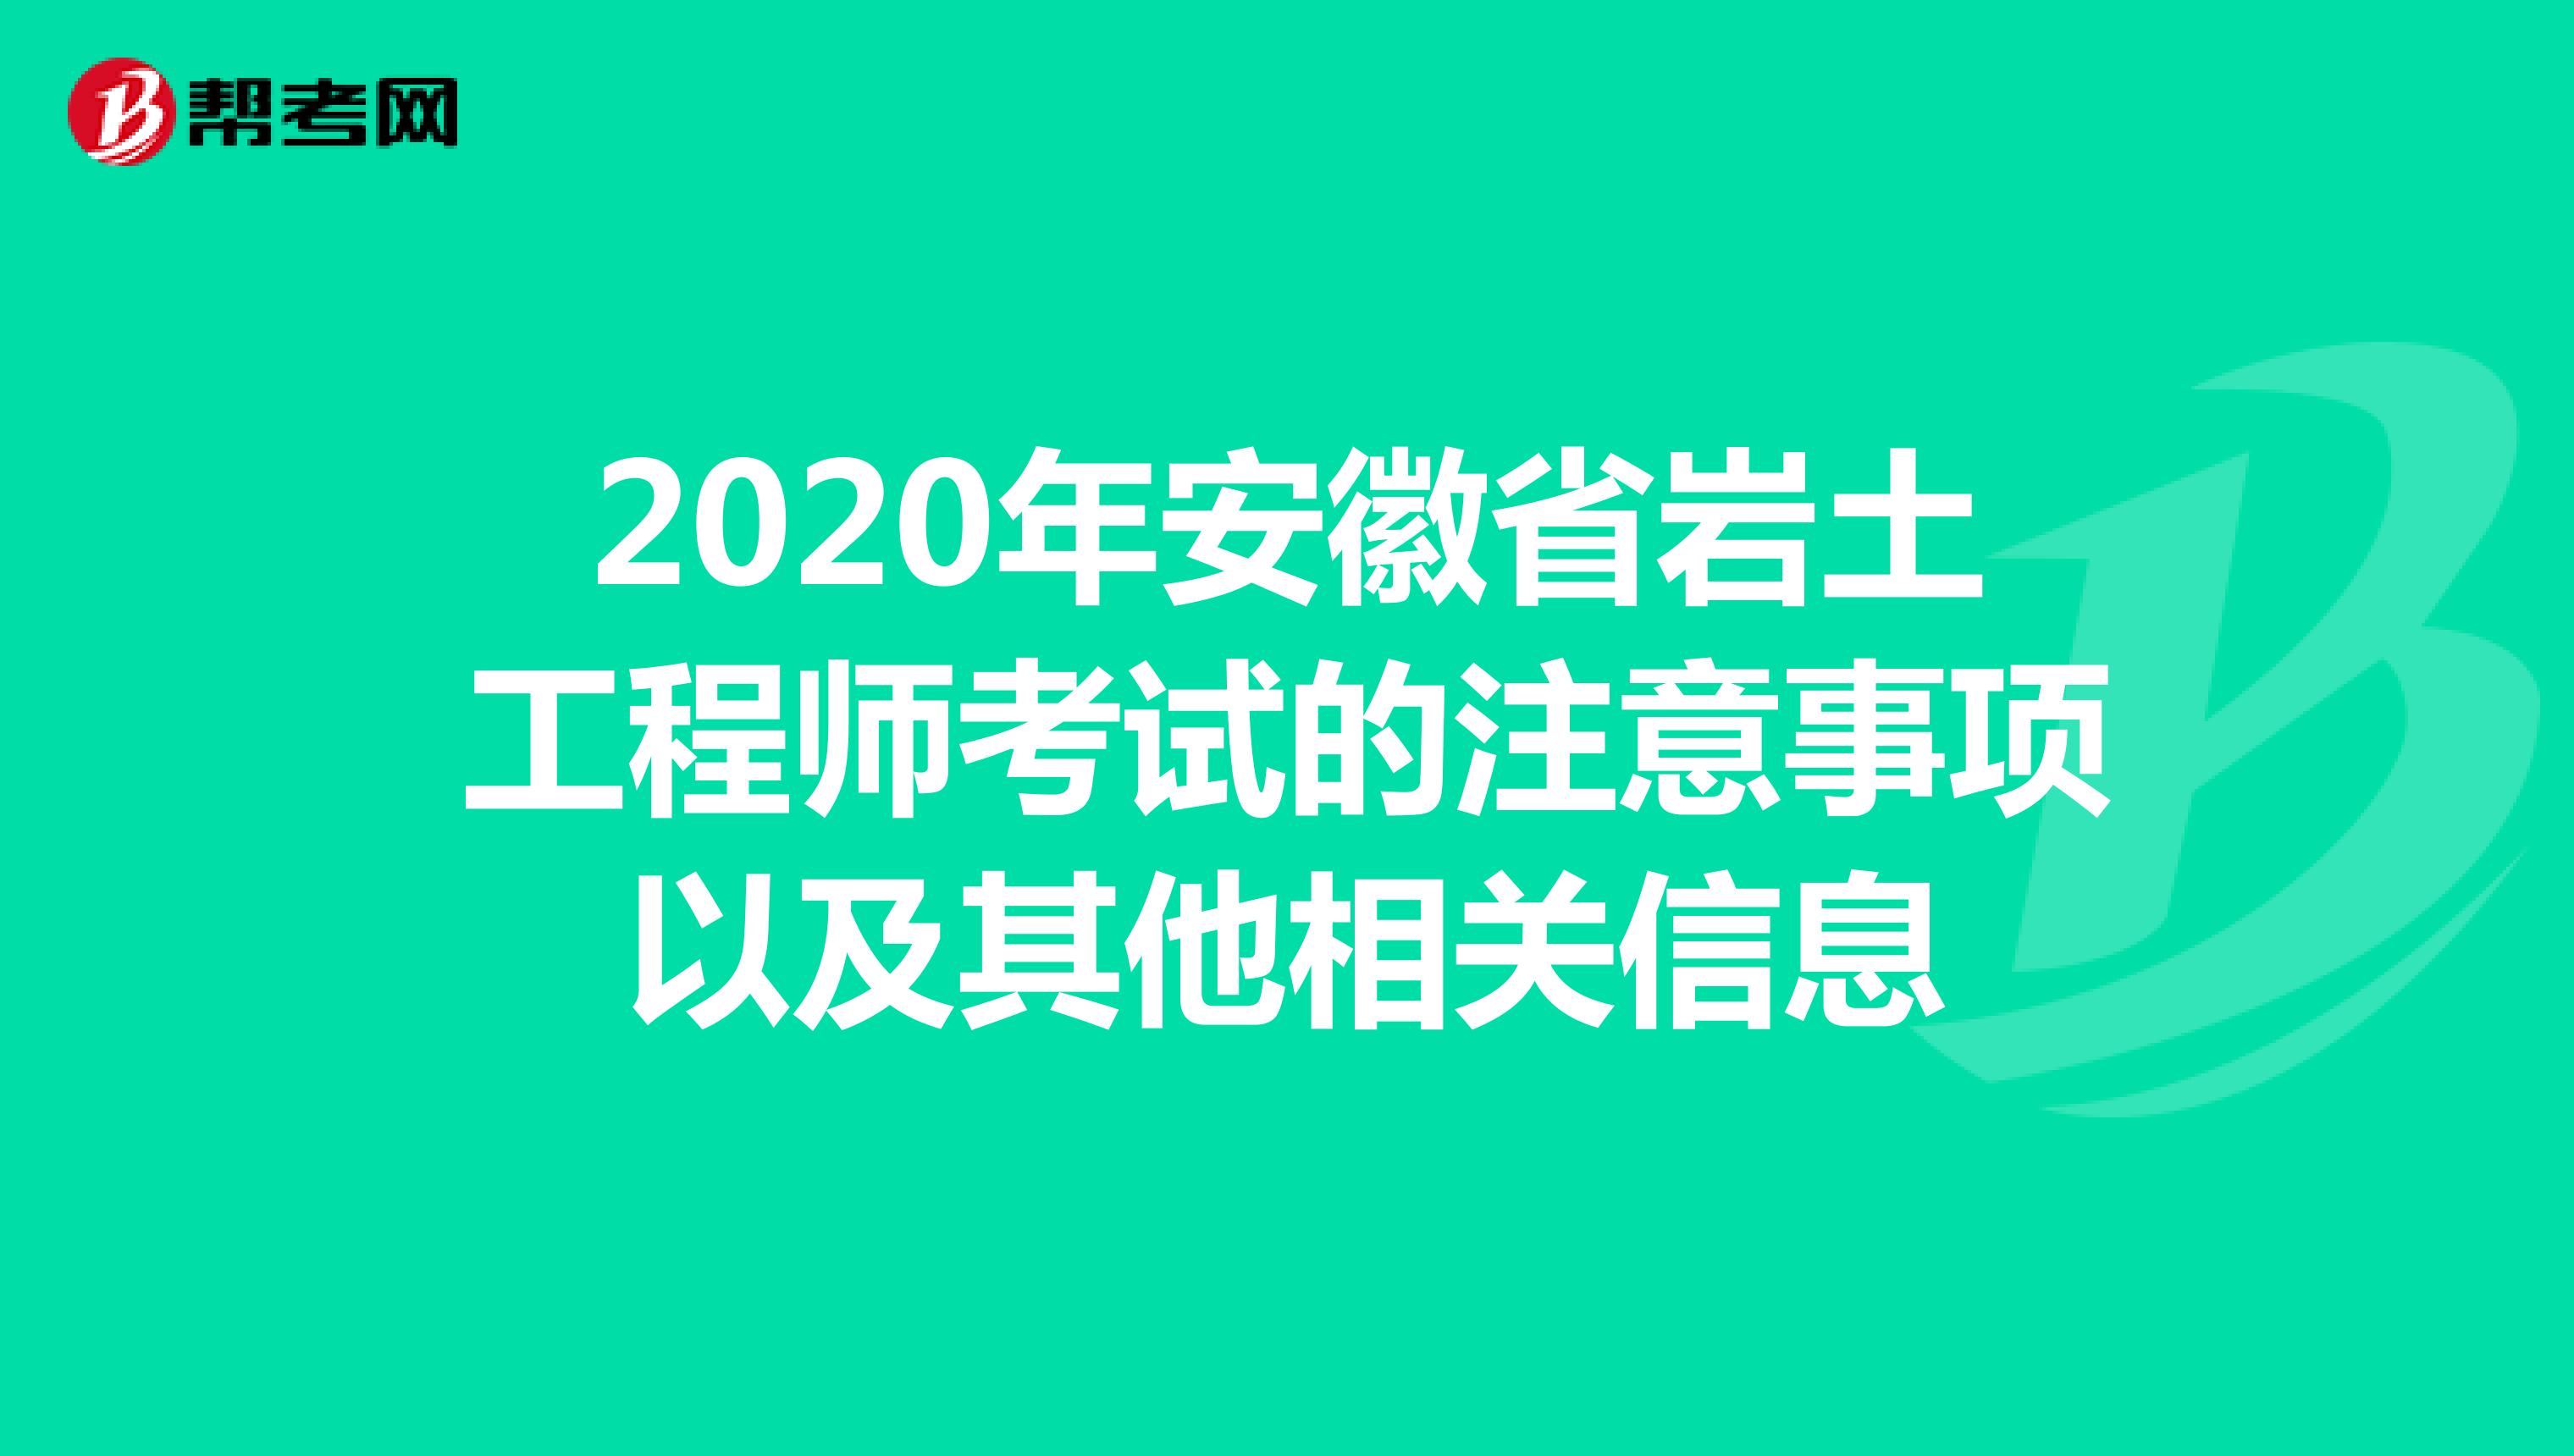 2020年安徽省岩土工程师考试的注意事项以及其他相关信息